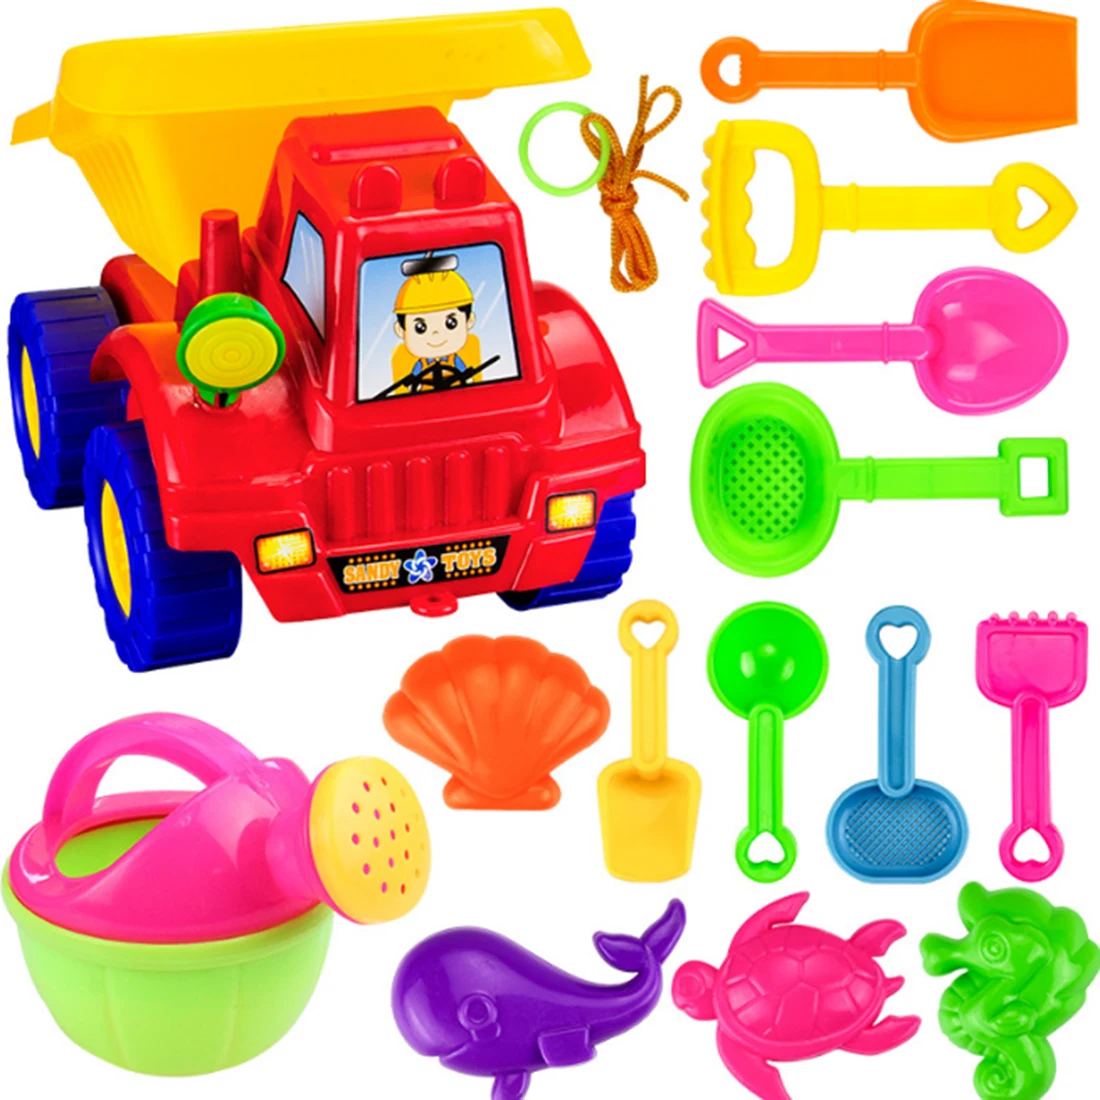 NFSTRIKE 14 шт. дети Пластик пляж игрушка набор лопаты грабли лейку образования бассейн песок игрушки для детей-Цвет случайный